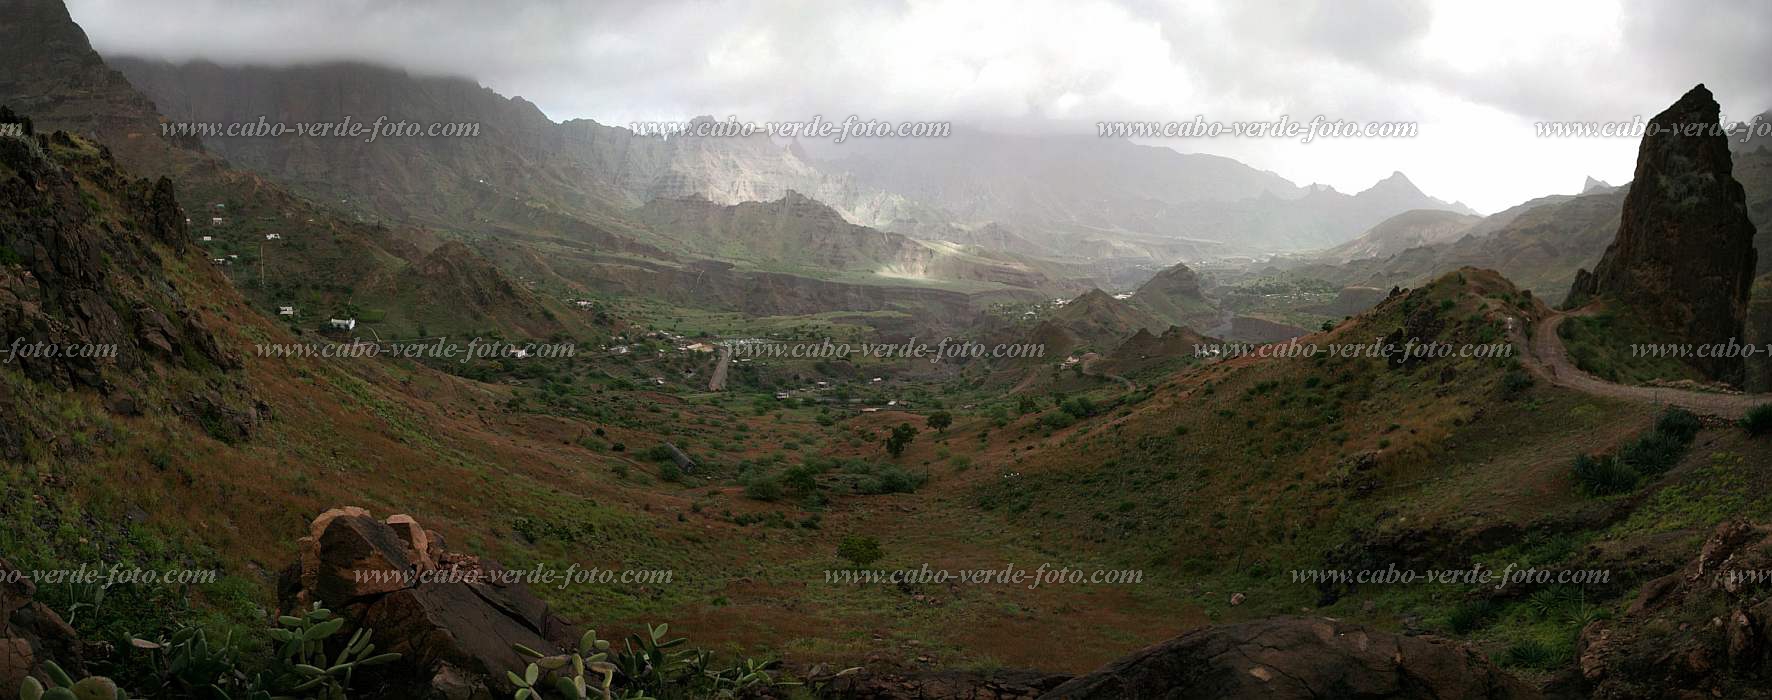 Santo Anto : Ribeira das Patas : panorama : Landscape MountainCabo Verde Foto Gallery